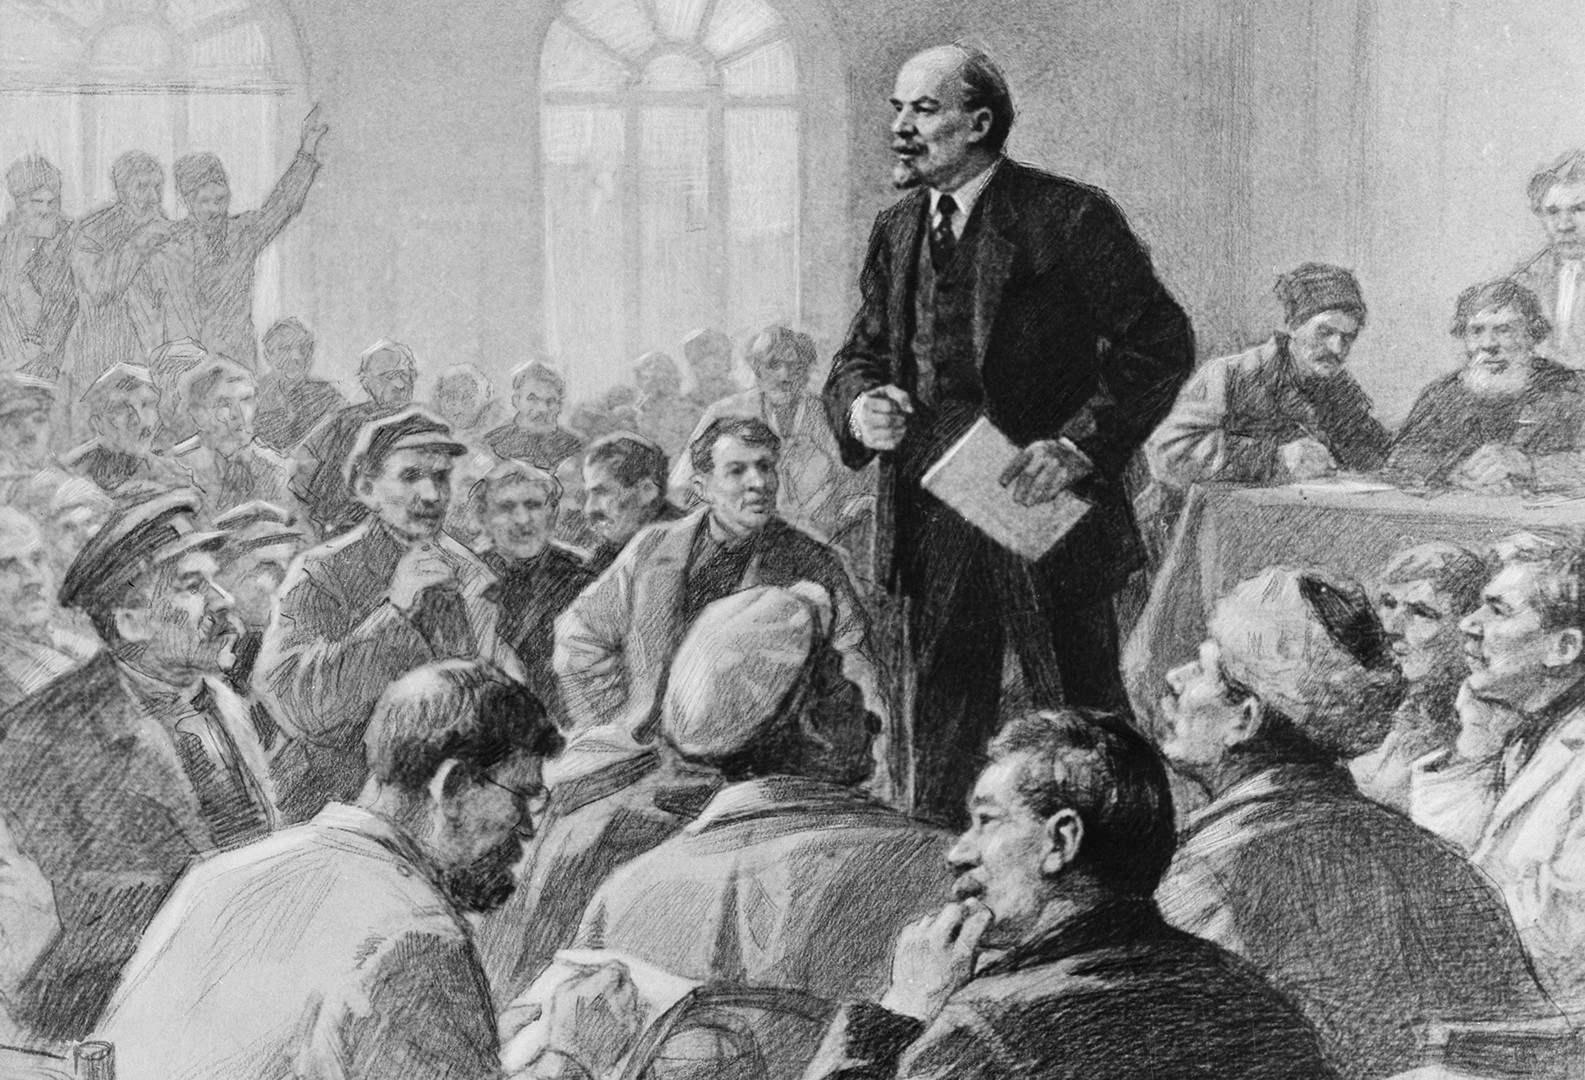 Vladimir Lenin gives a speech at a meeting.